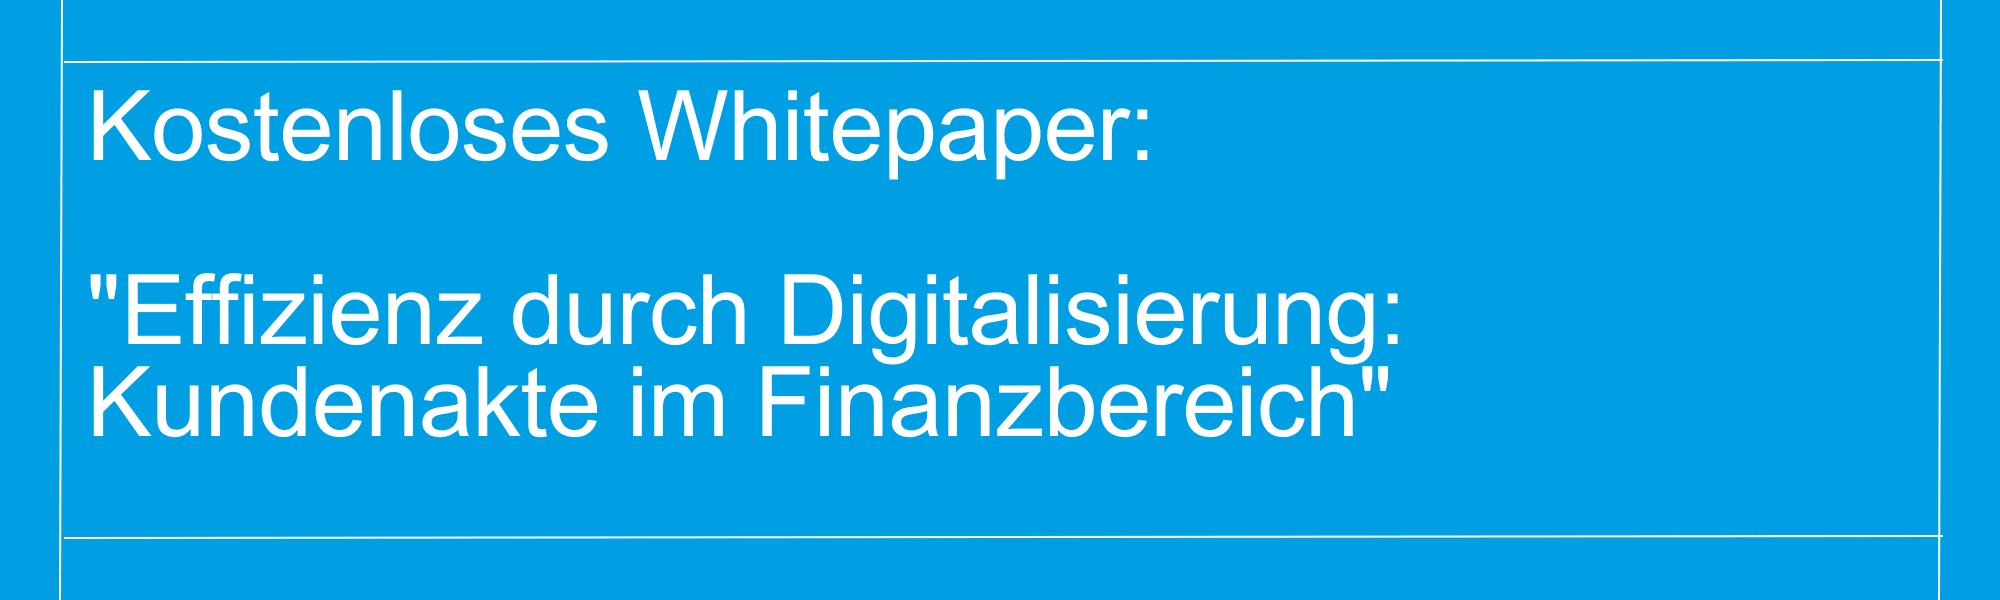 Artaker IT - Whitepaper Link Effizienz durch Digitalisierung Kundenakte im Finanzbereich